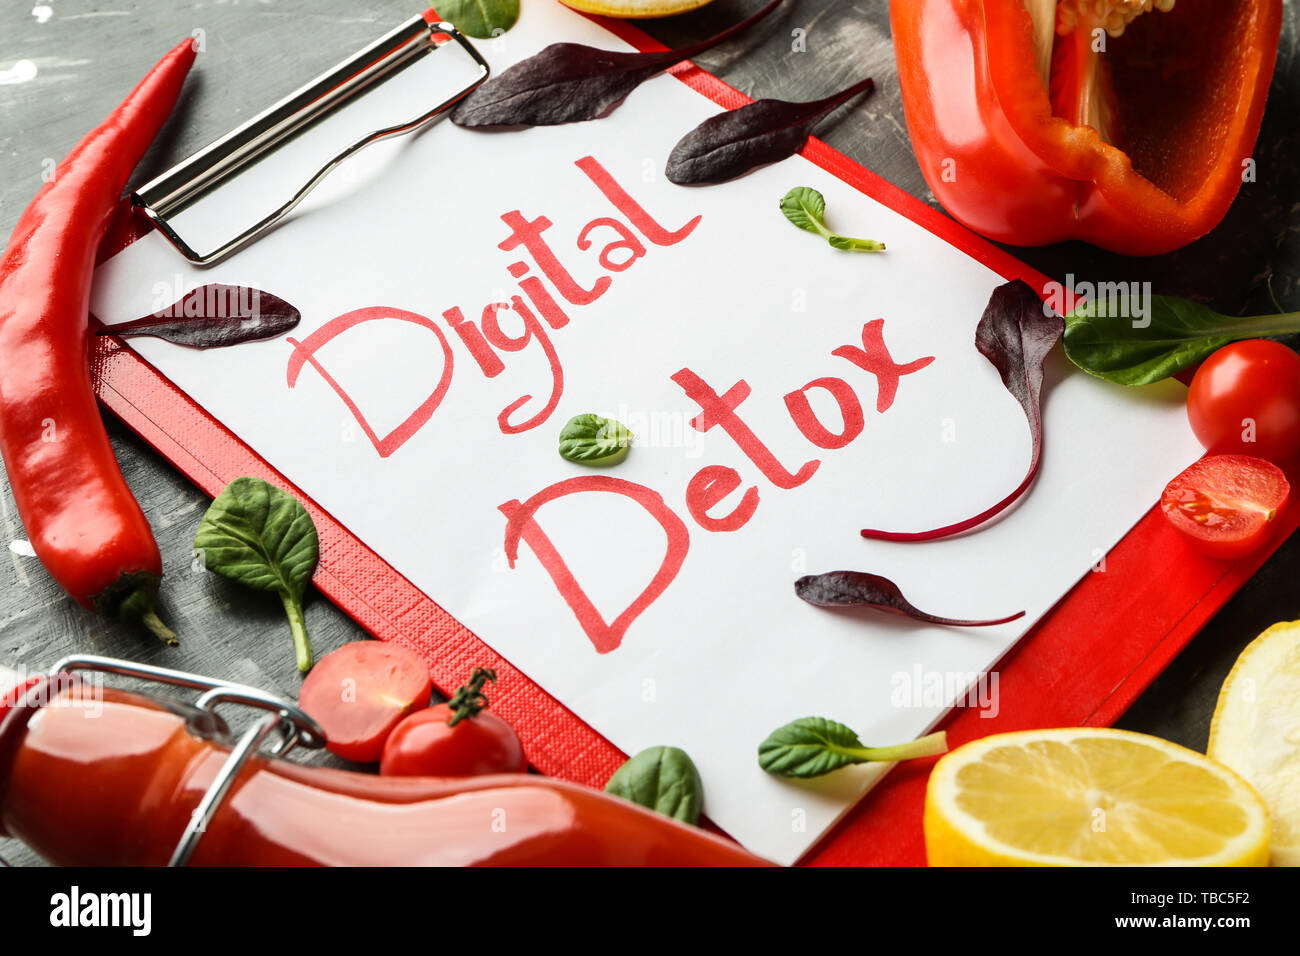 Con appunti digitali di testo DETOX e verdure fresche su sfondo scuro Foto Stock